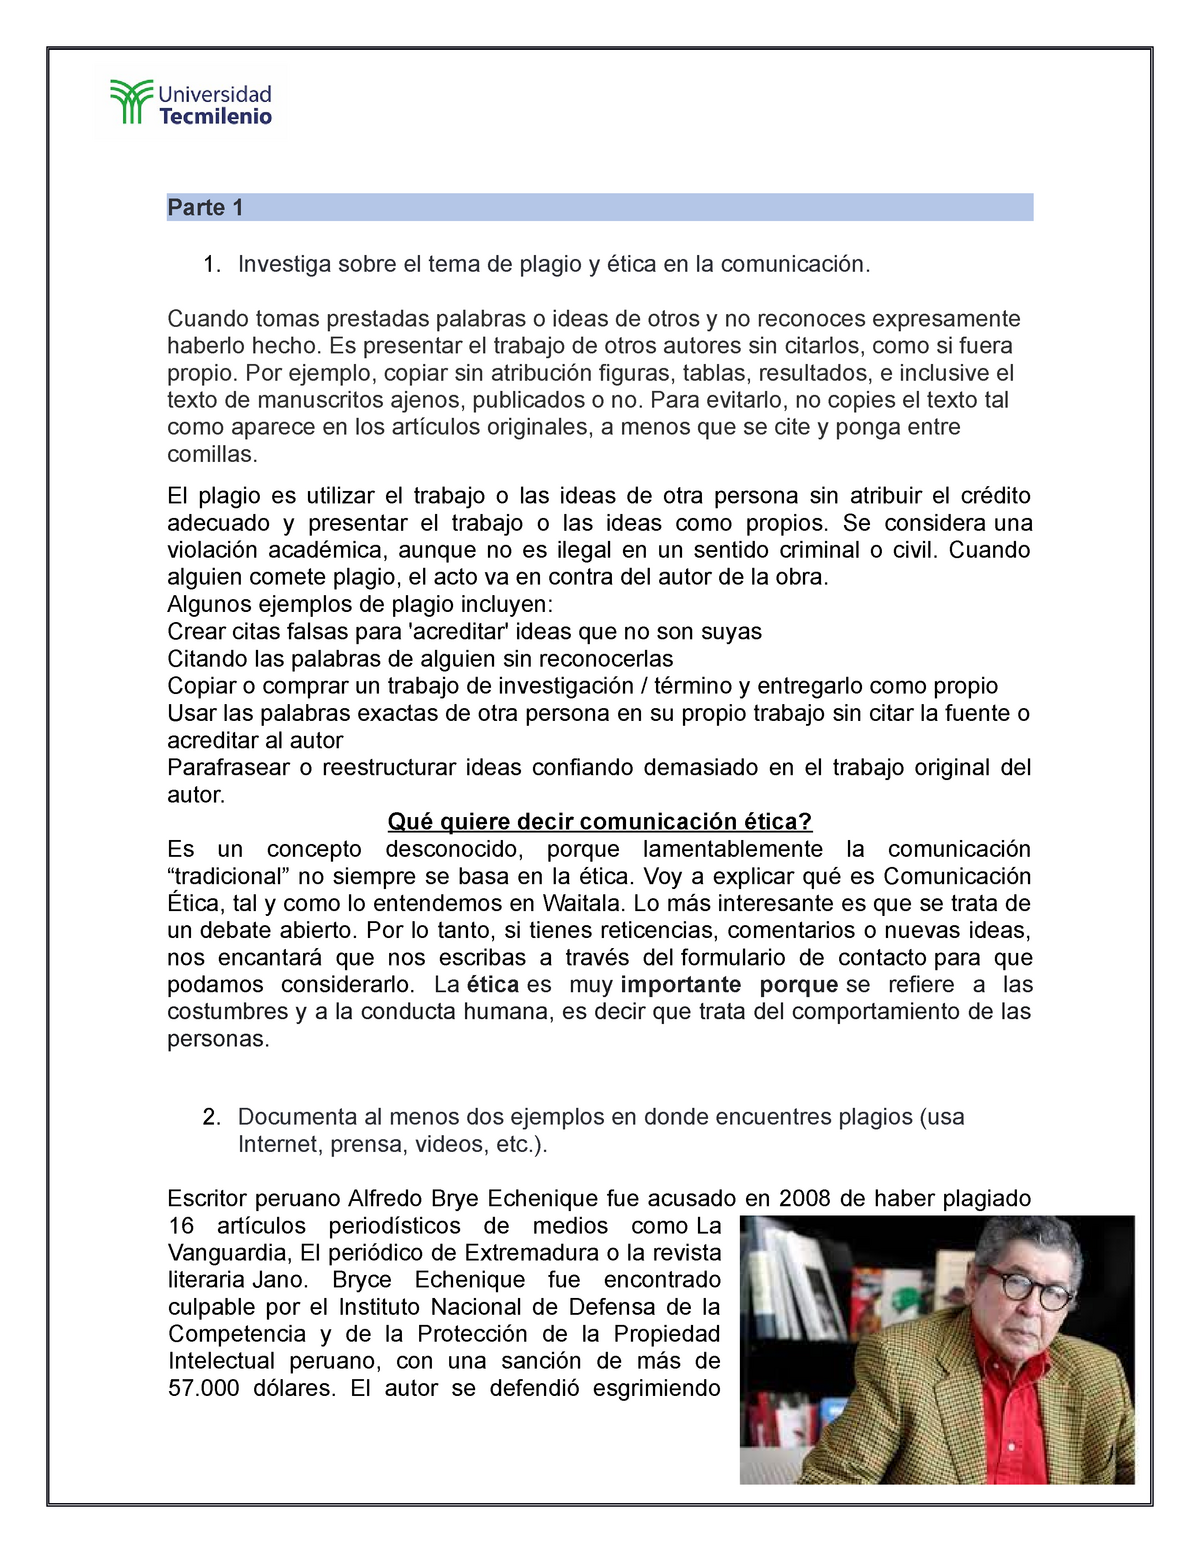 Semana#03 Comunicacion Efectiva - Parte 1 Investiga sobre el tema de plagio  y ética en la - Studocu